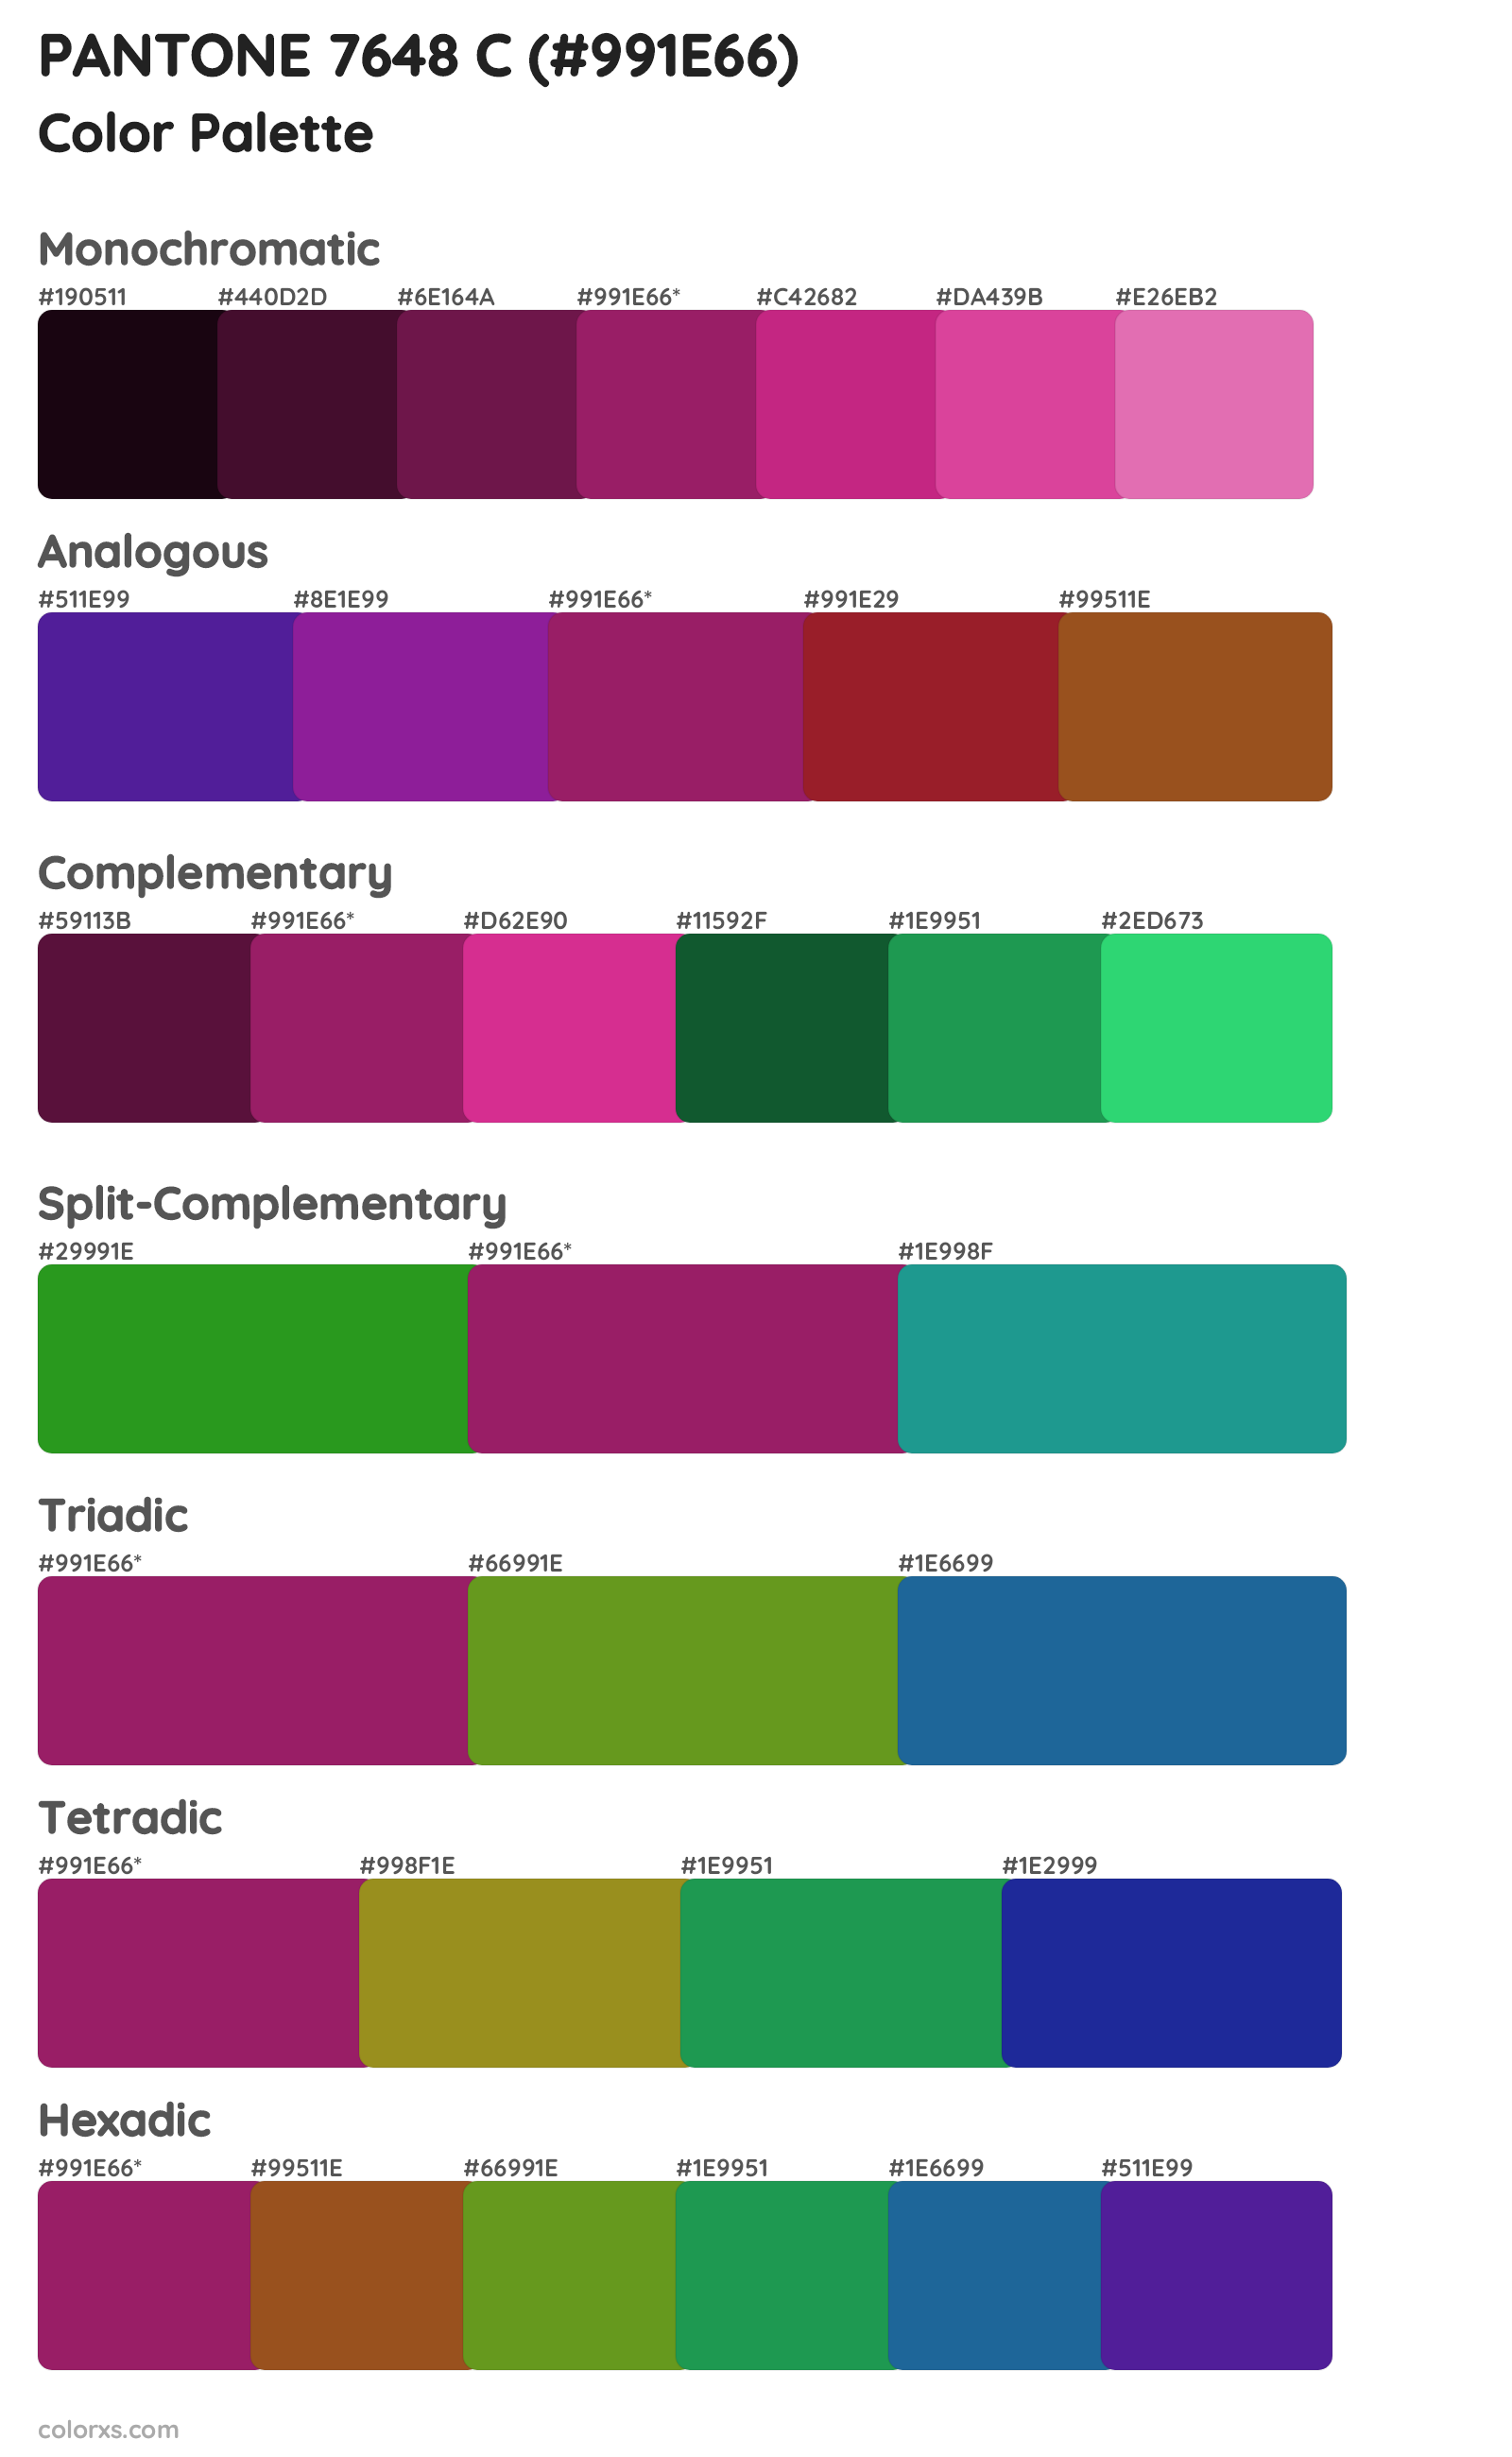 PANTONE 7648 C Color Scheme Palettes